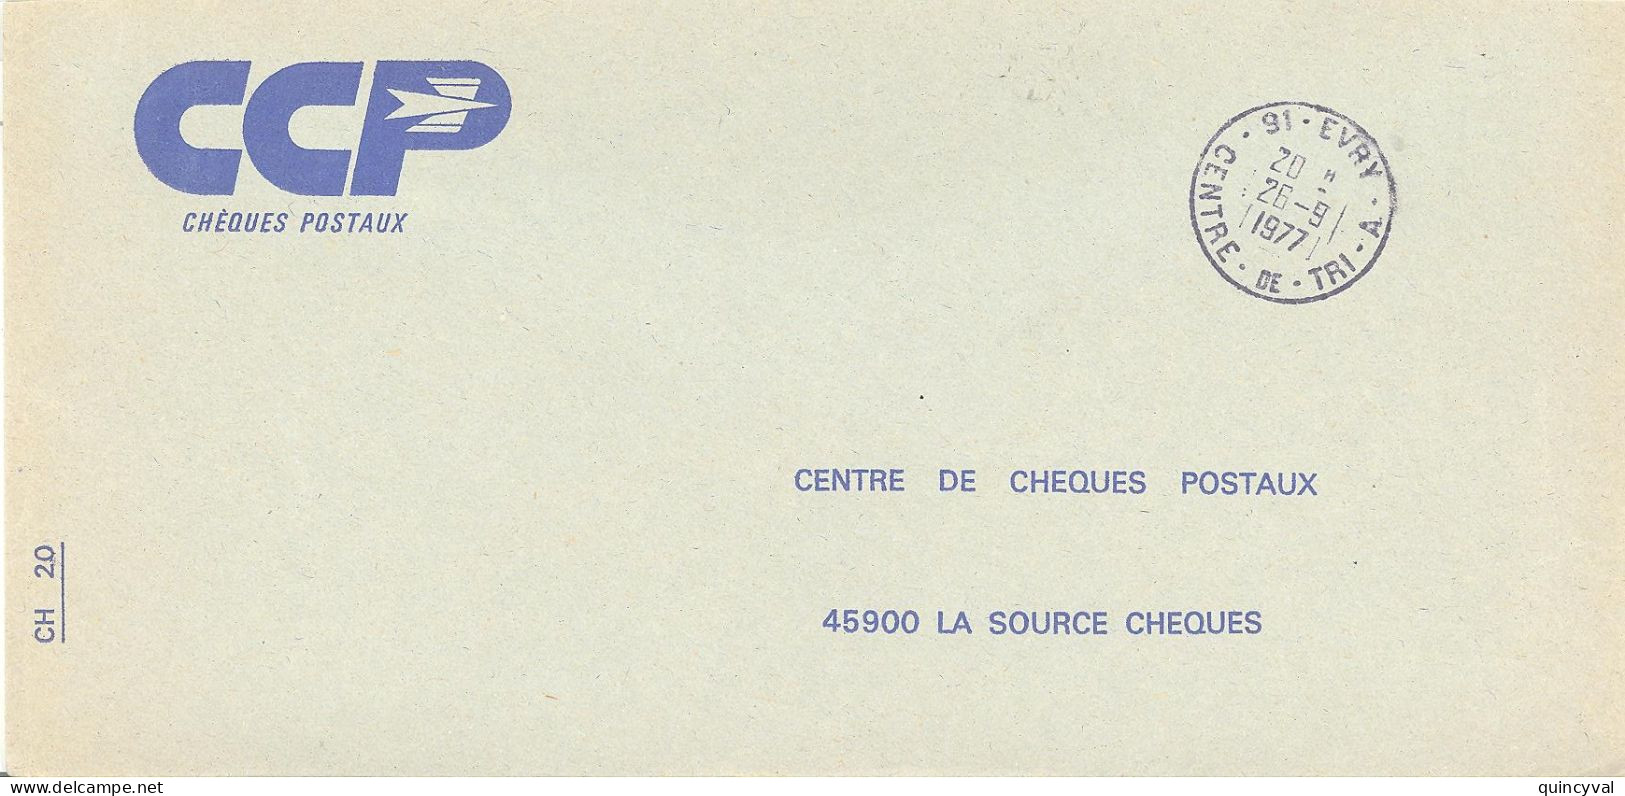 91 EVRY  CENTRE DE TRI  A   Lettre Enveloppe Des CCP Ob26 9 1977 - Handstempel